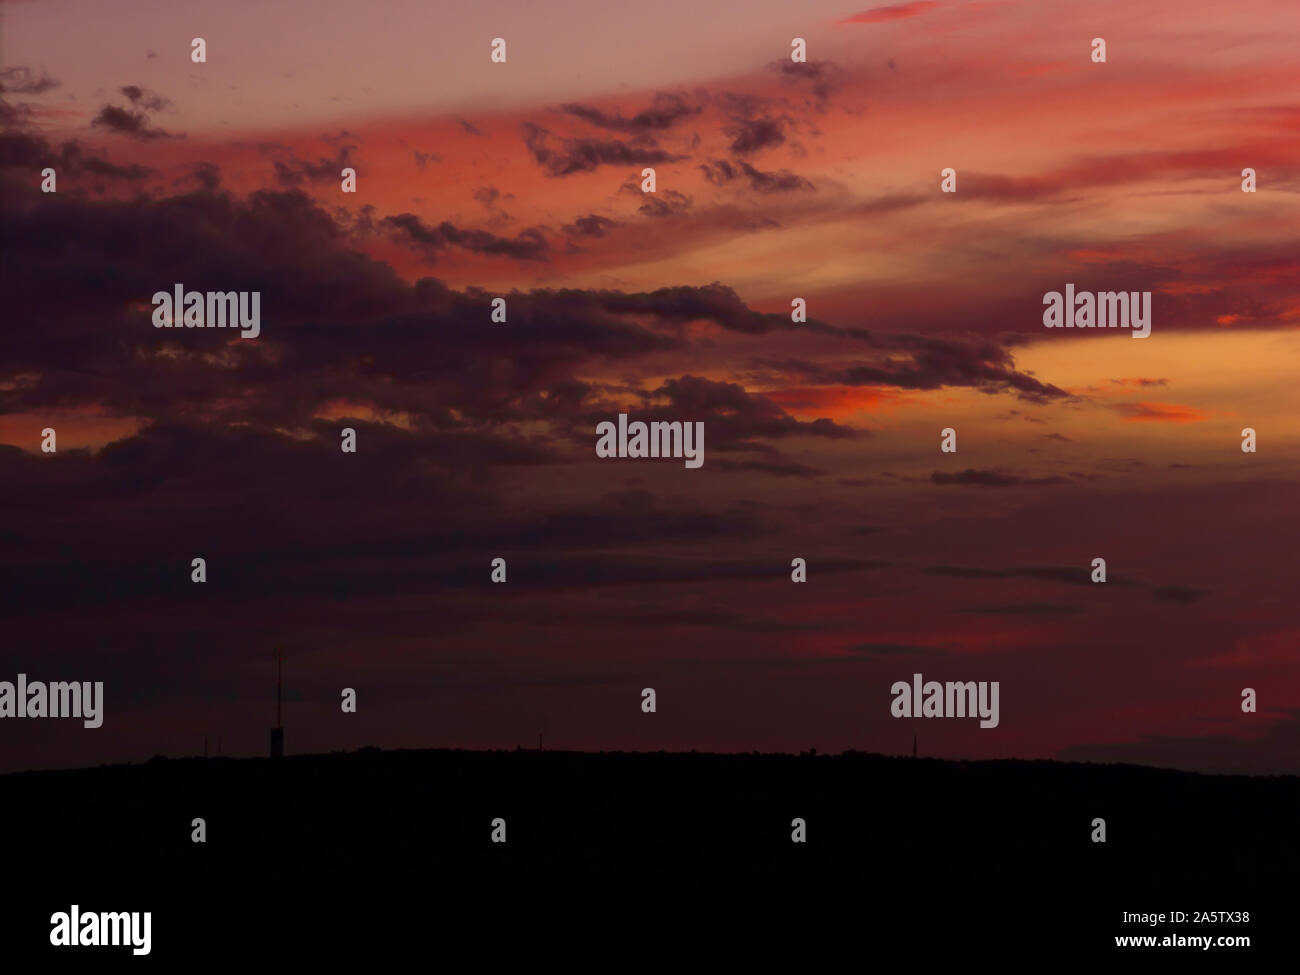 Sonnenuntergang über einem Hügel. Riesige dunkle mystische Wolken. Orange, Pink und Pfirsichfarben wechseln sich ab. Schwarze Silhouette des Hügels am unteren Bildrand. Stockfoto